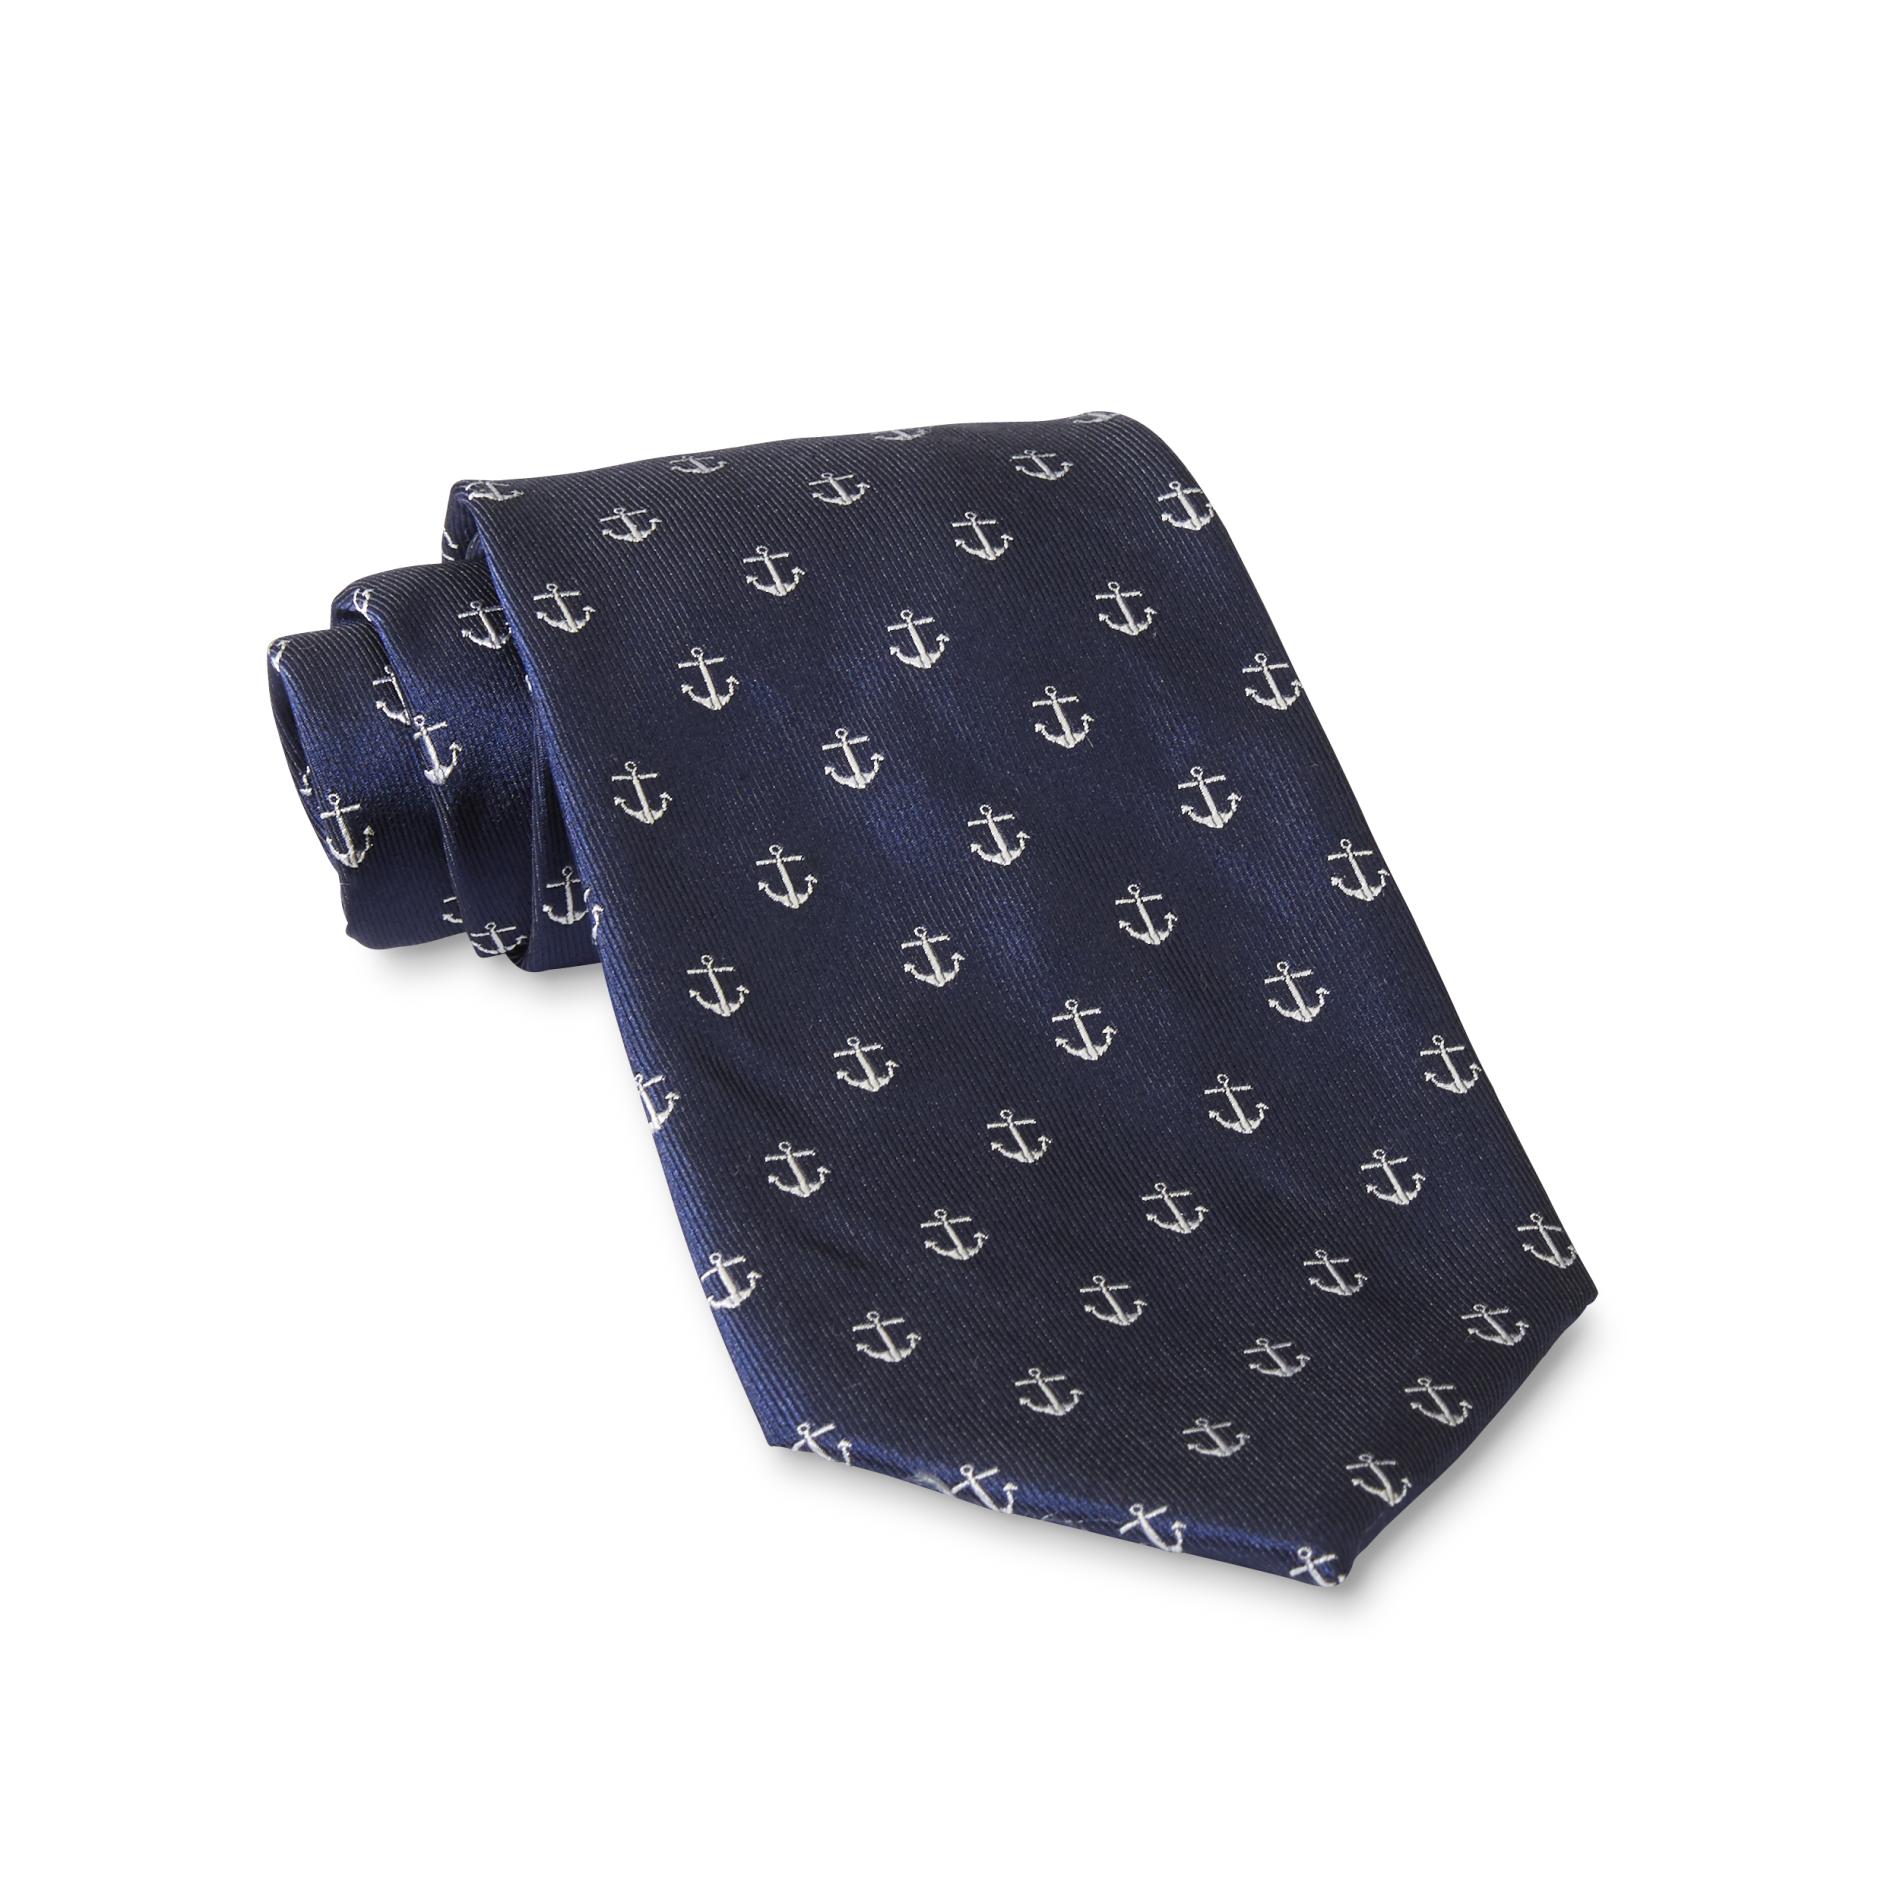 Dockers Men's Necktie - Anchor Print